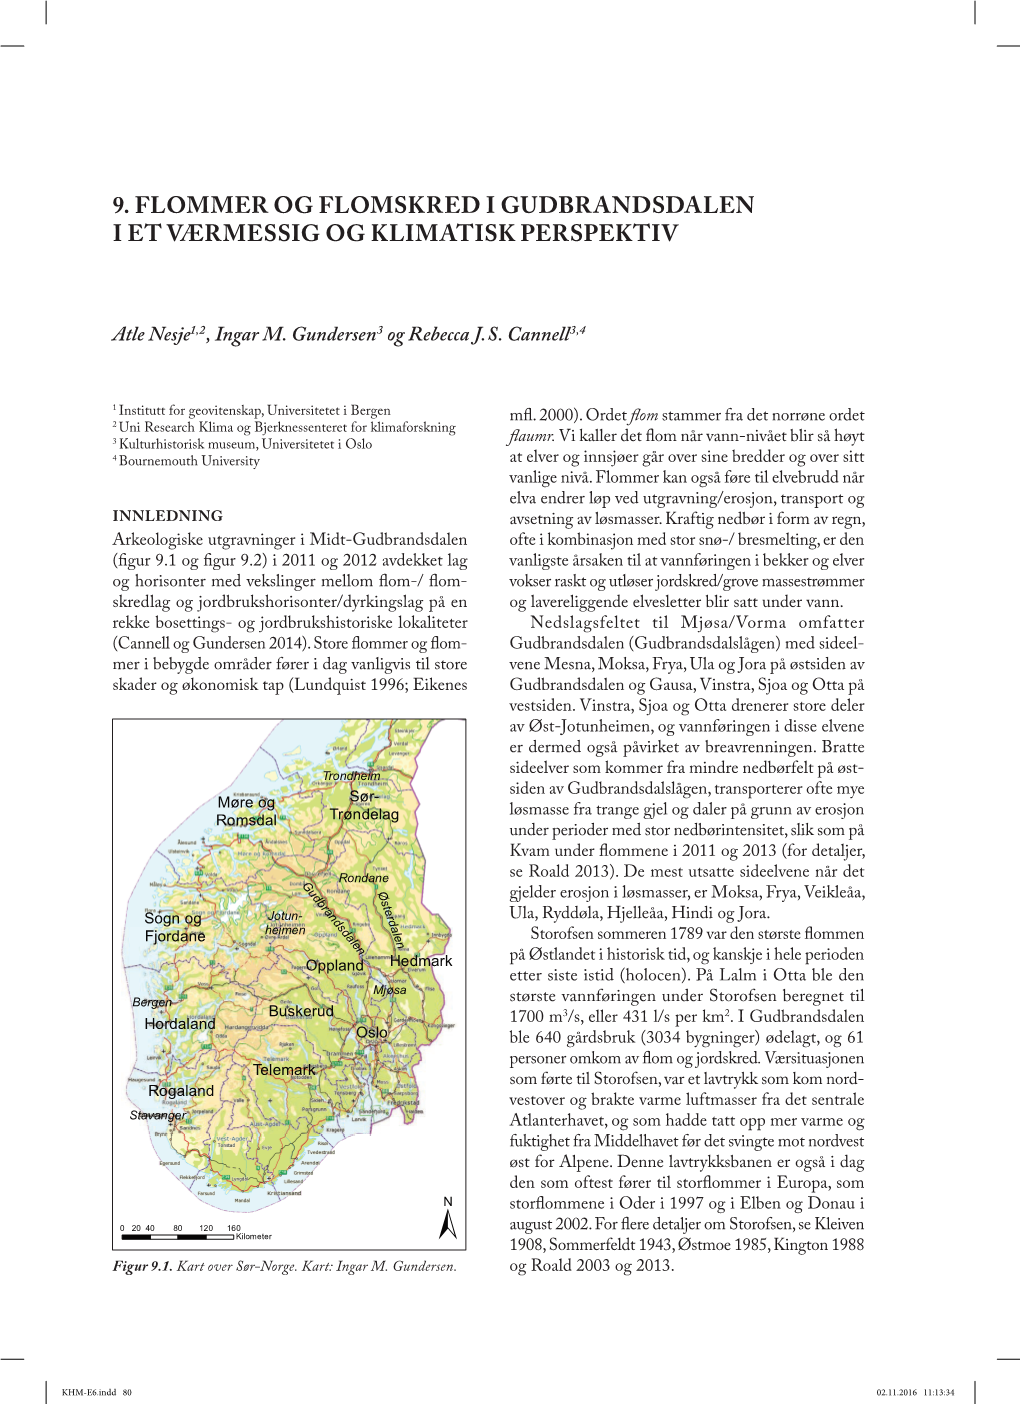 9. Flommer Og Flomskred I Gudbrandsdalen I Et Værmessig Og Klimatisk Perspektiv